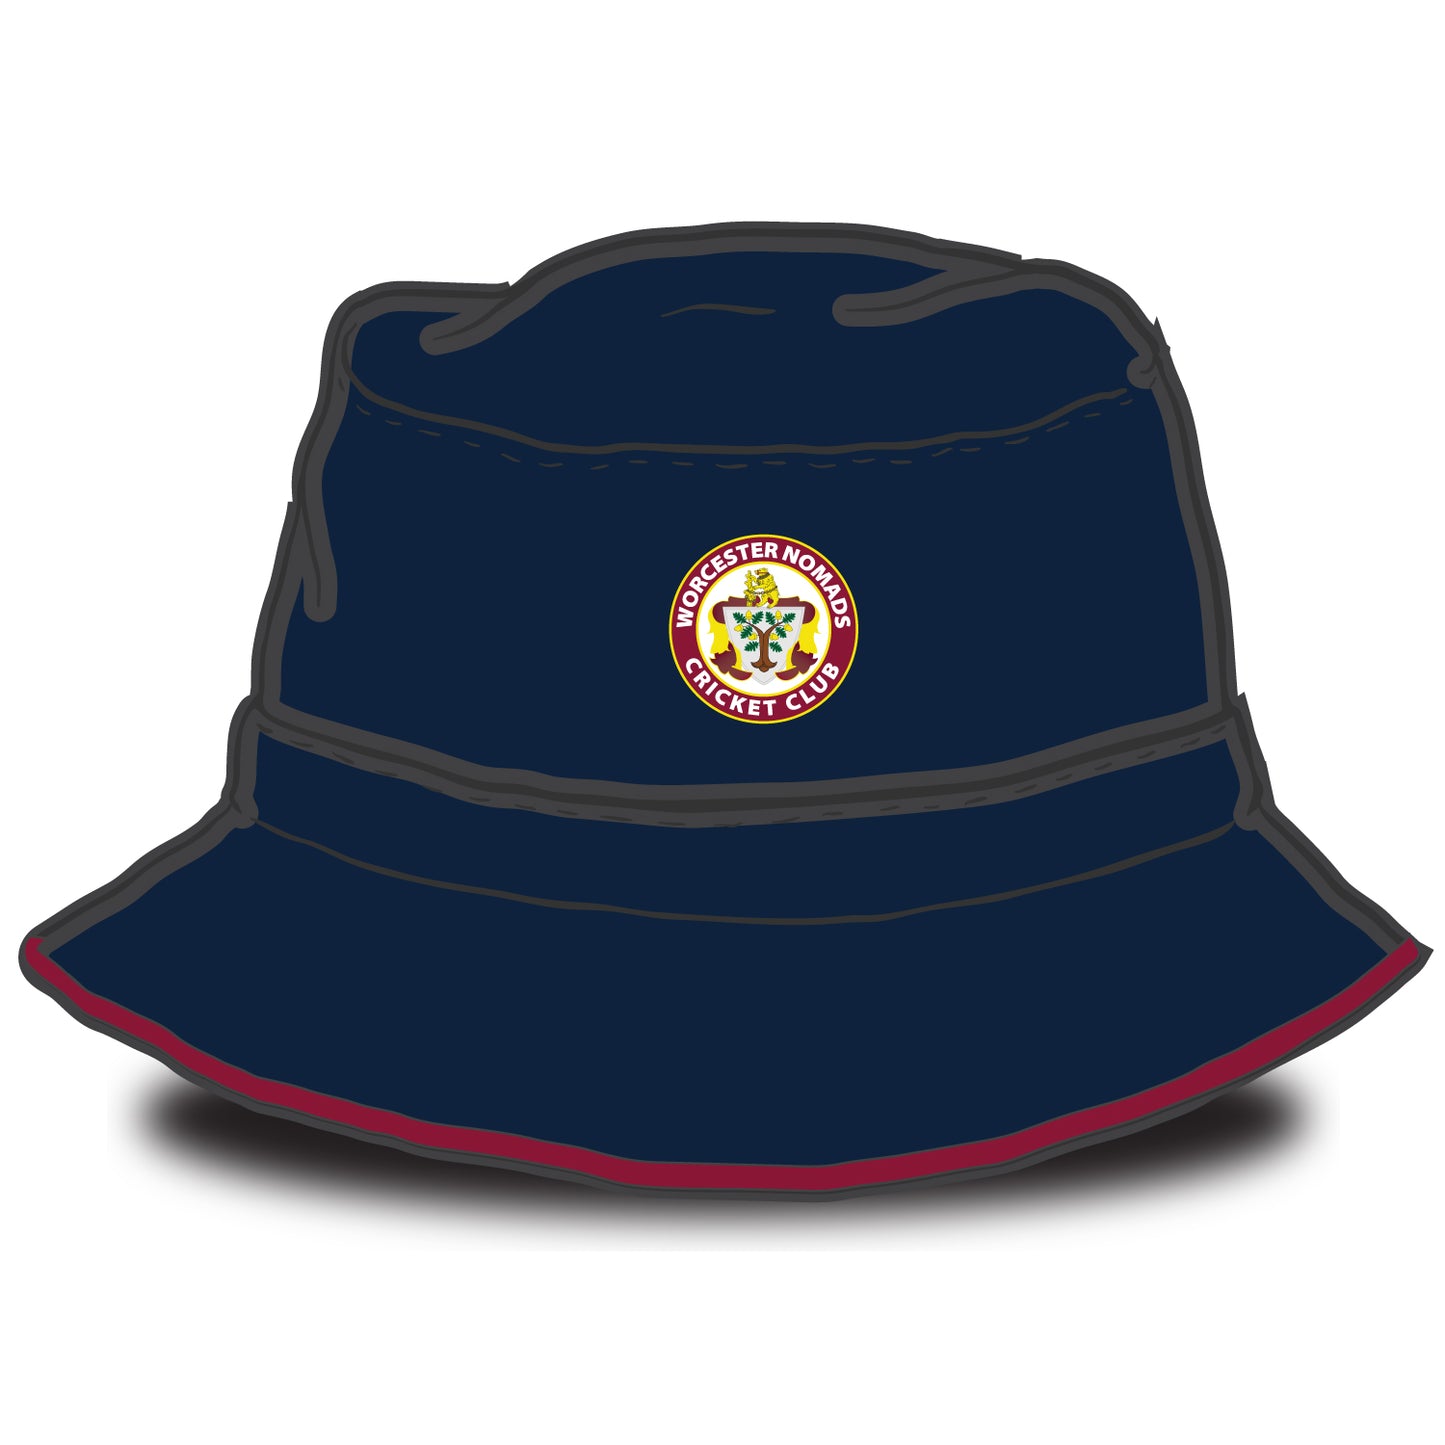 Worcester Nomads Cricket Club Bucket Hat